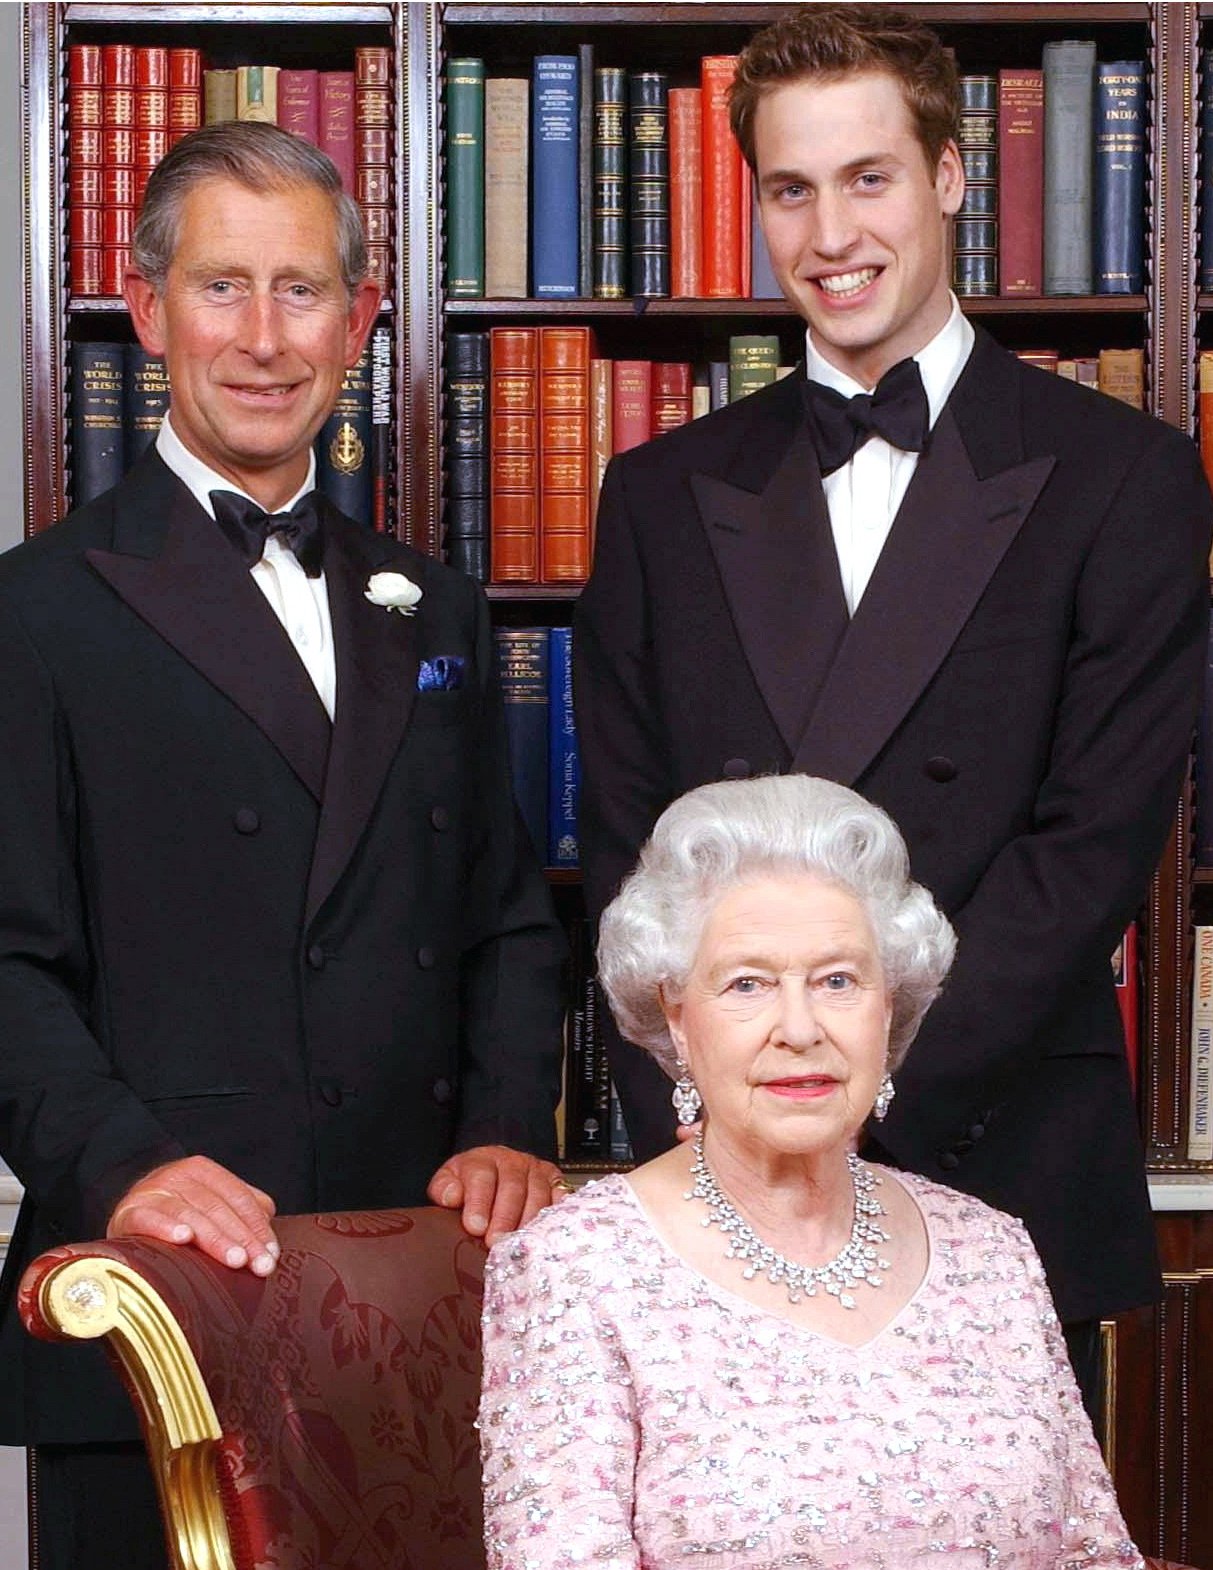 Königin Elizabeth II., Prinz Charles, der Prinz von Wales und sein Erbe Prinz William im Clarence House | Quelle: Getty Images